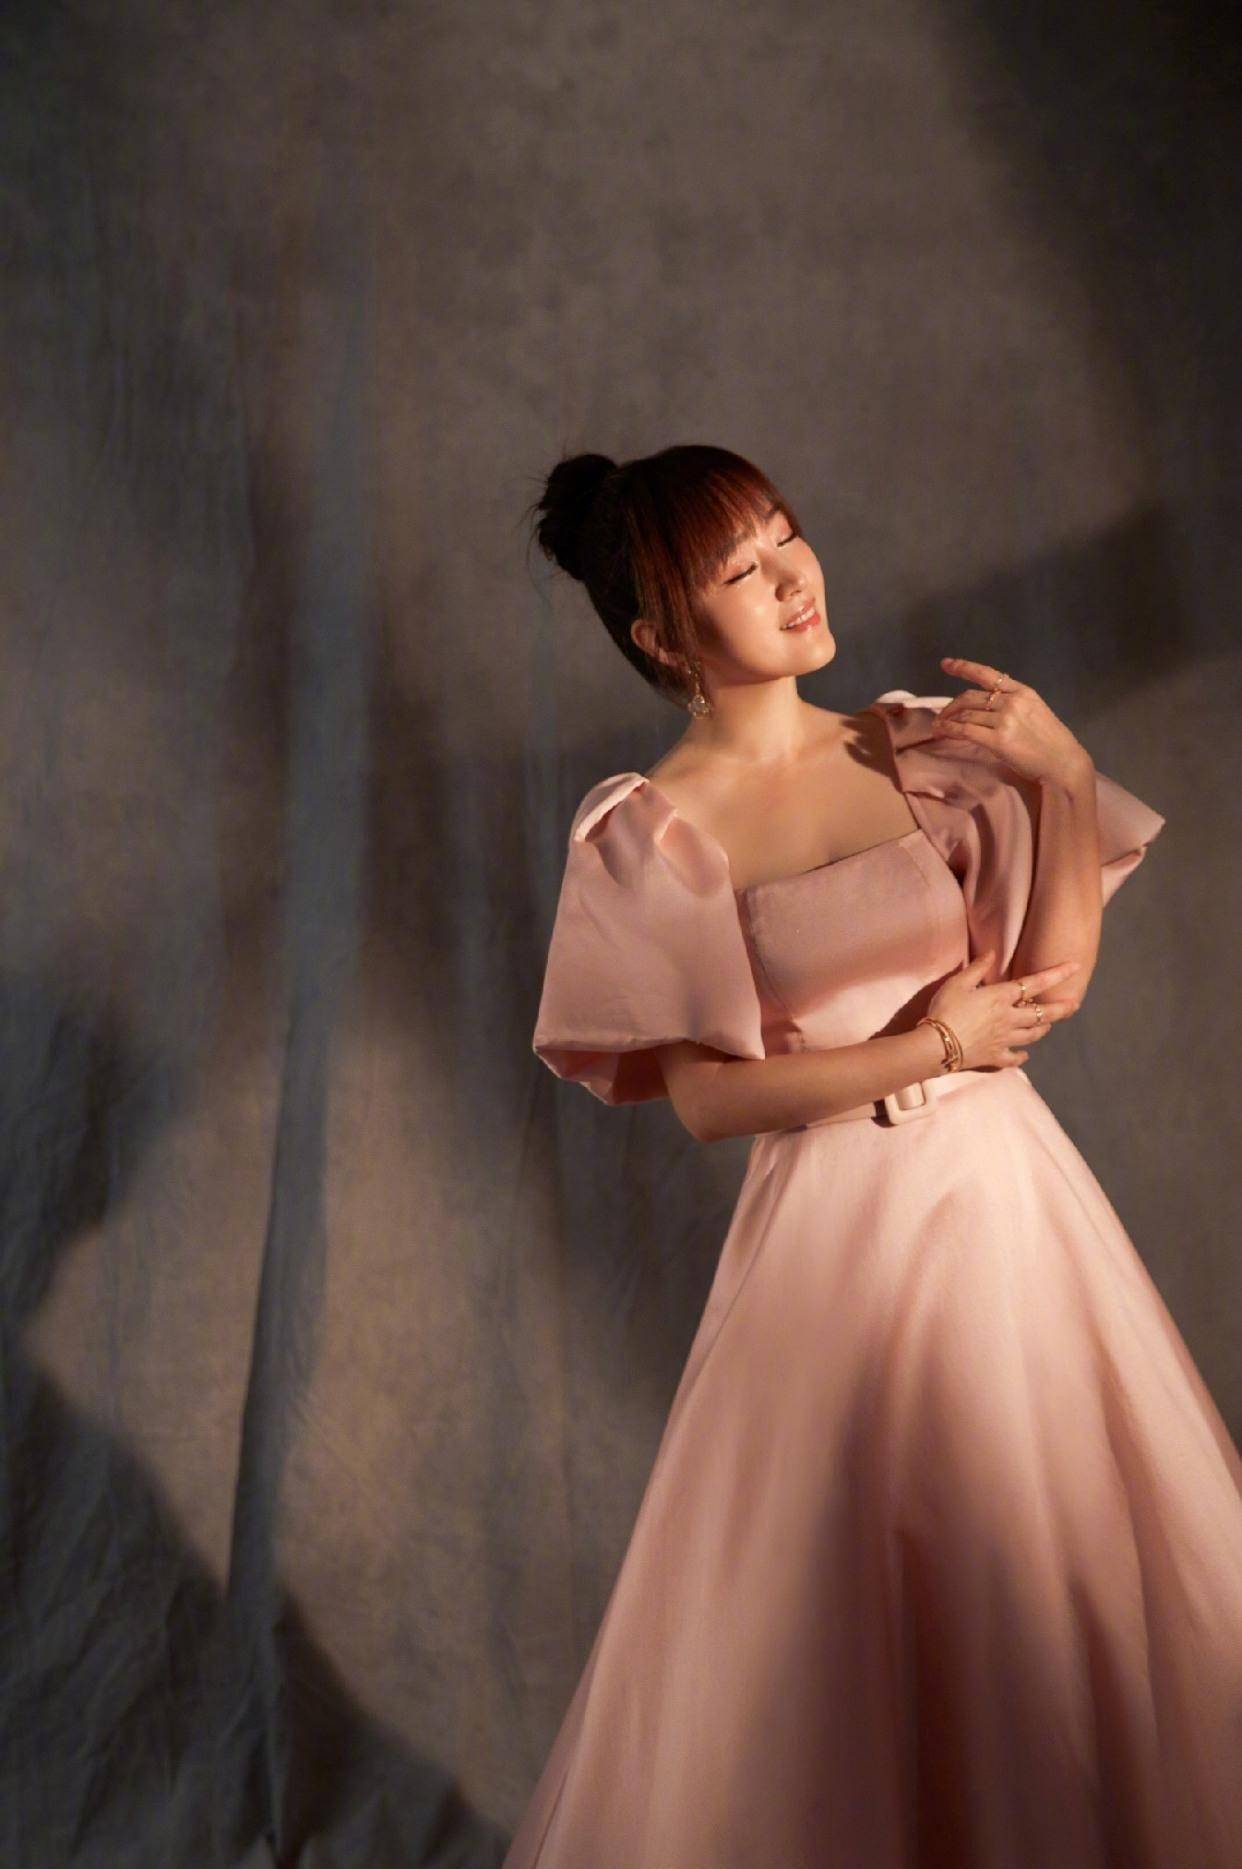 原创原创49岁杨钰莹穿粉色丝绸质地长裙显凹凸有致还这么有料